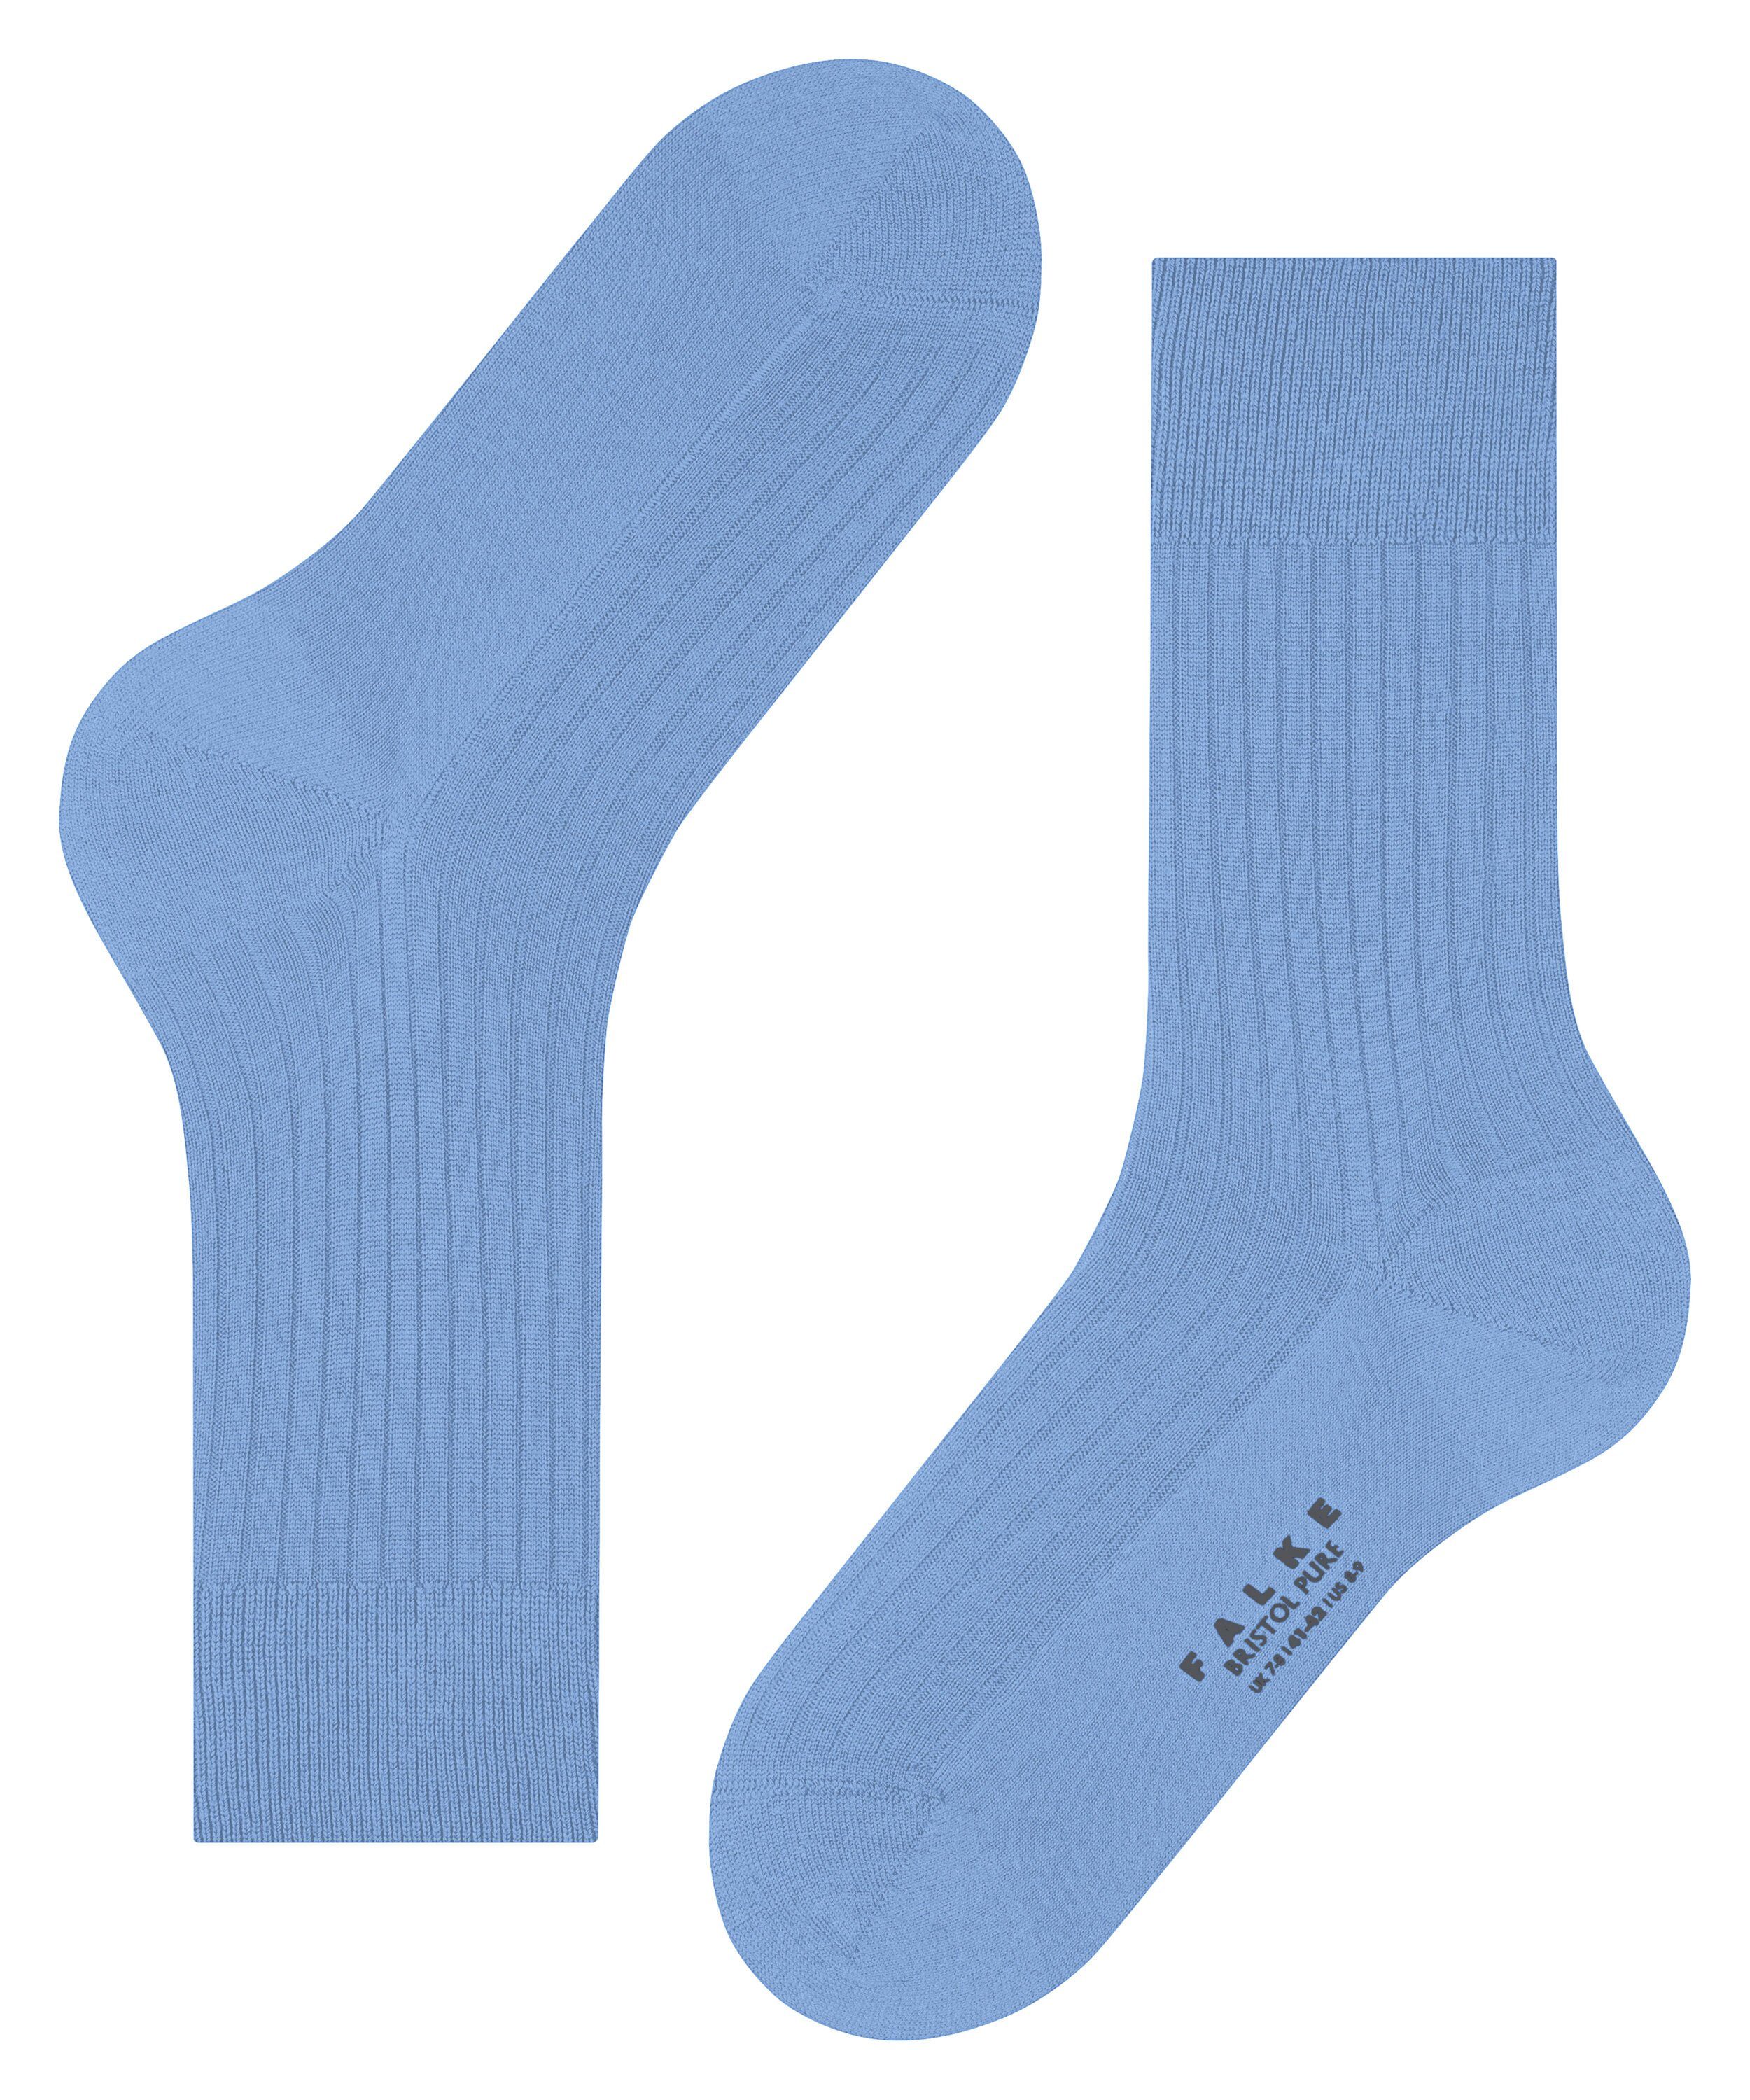 Bristol FALKE Pure arcticblue (1-Paar) (6367) Socken